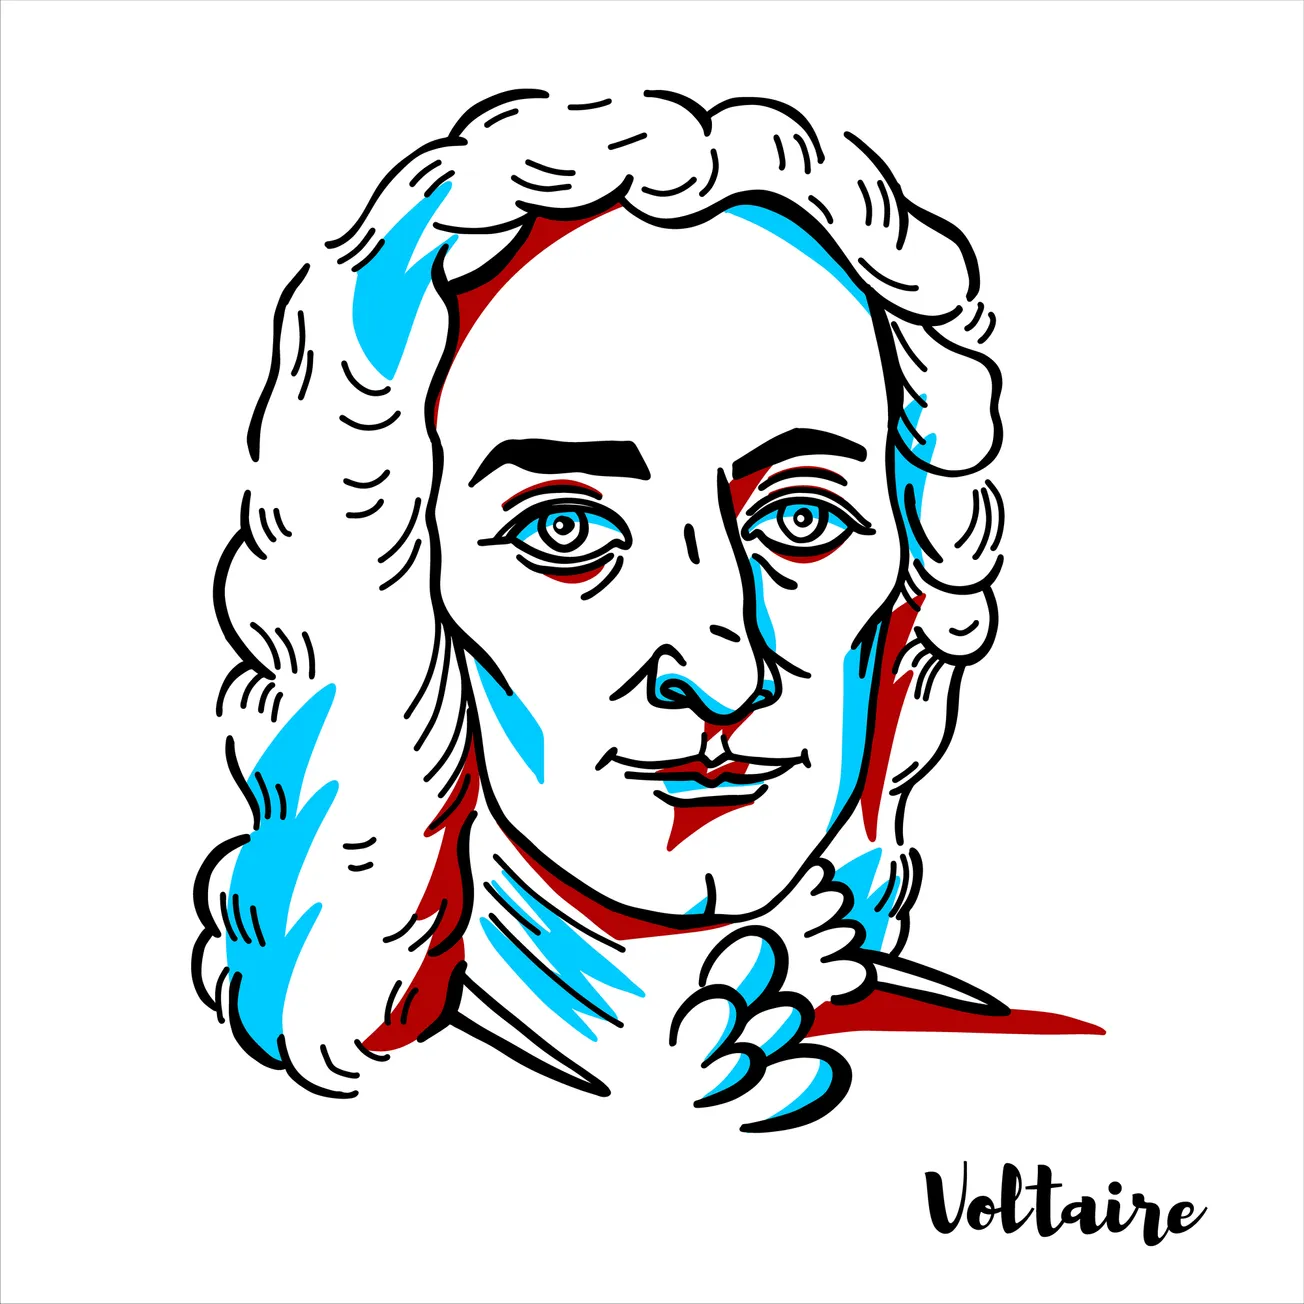 We Must Heed Voltaire's Words